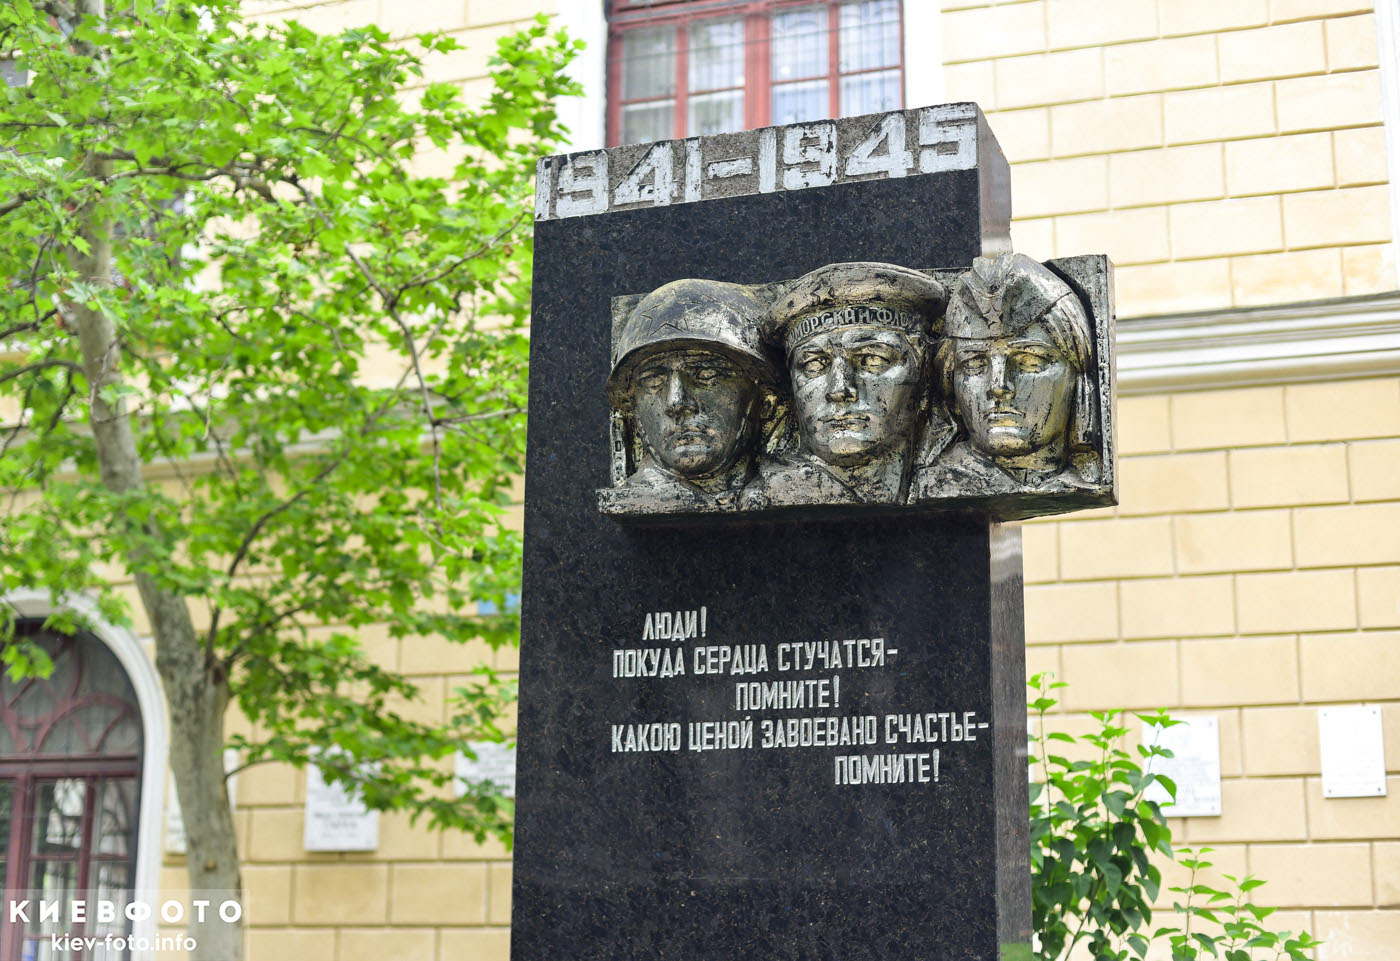 Памятник студентам, преподавателям и сотрудникам Одесского университета И. Мечникова